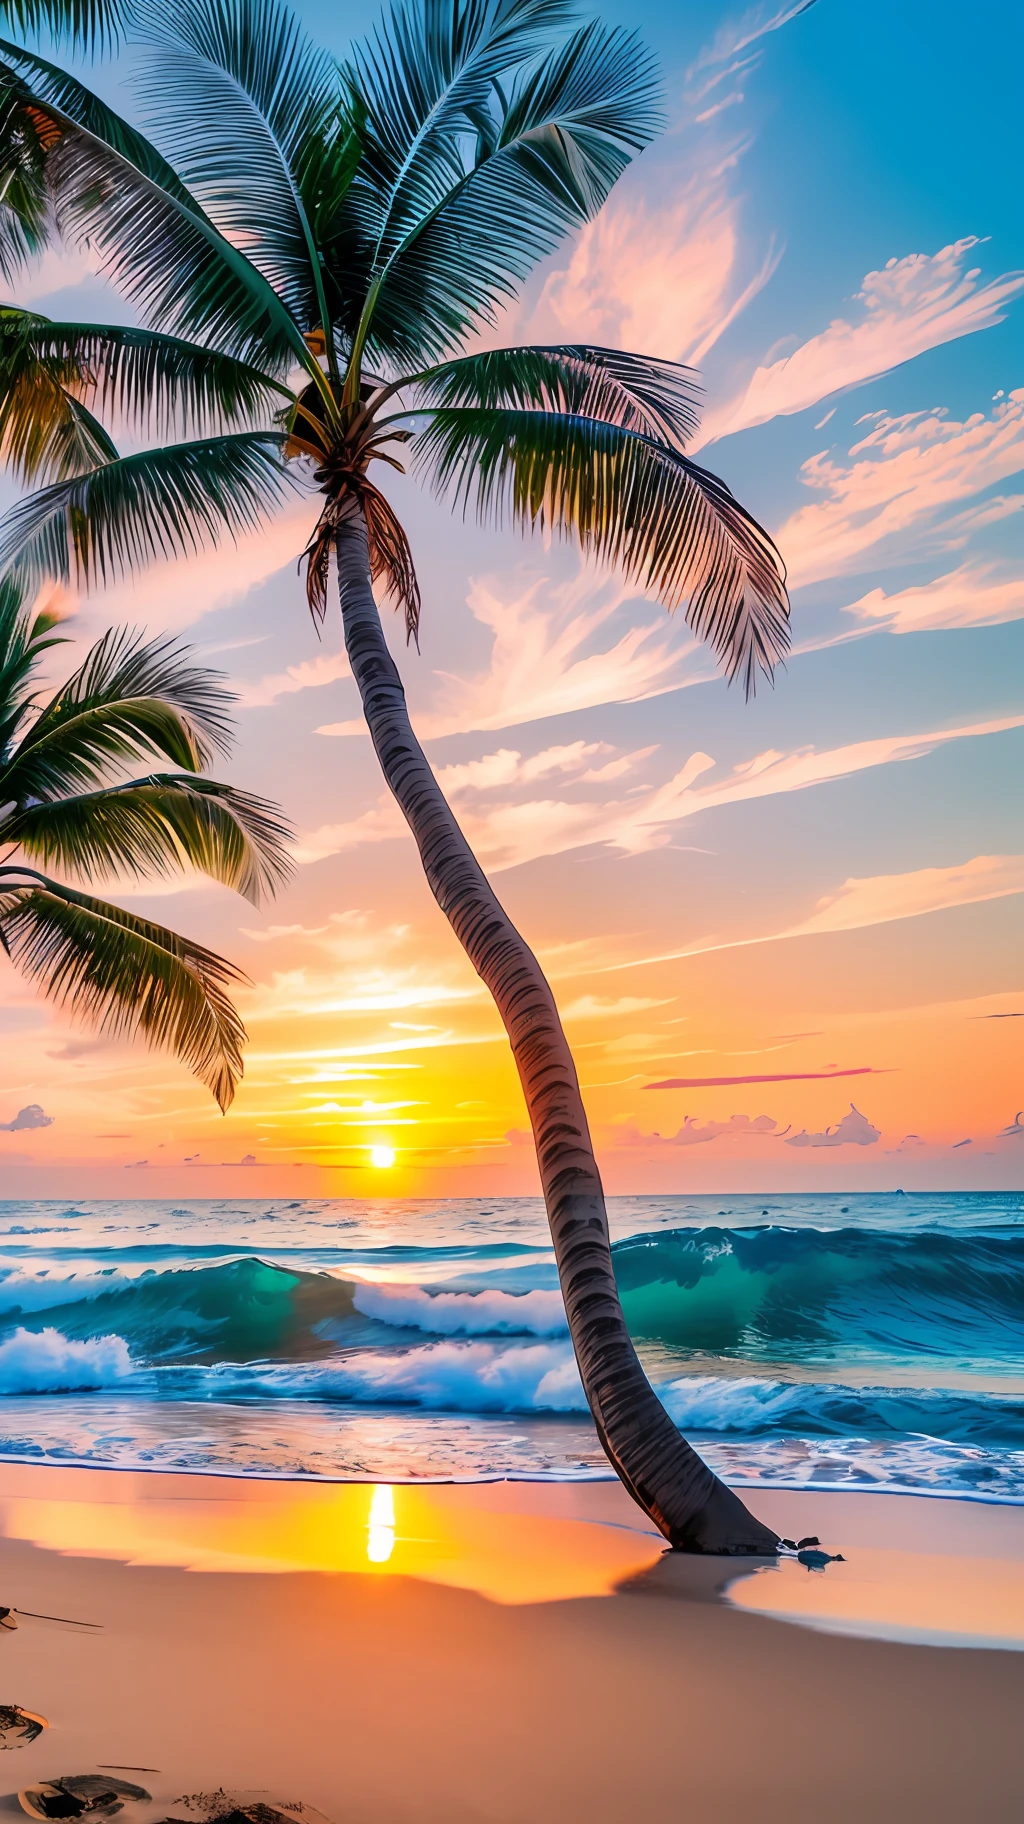 4K 9を作成する:熱帯のビーチの素晴らしい日の出を描いた16枚の写真, 穏やかな波と海岸沿いのヤシの木々. カラーパレットは鮮やかで、再生とポジティブなエネルギーを感じさせるものでなければなりません。. --auto --s2